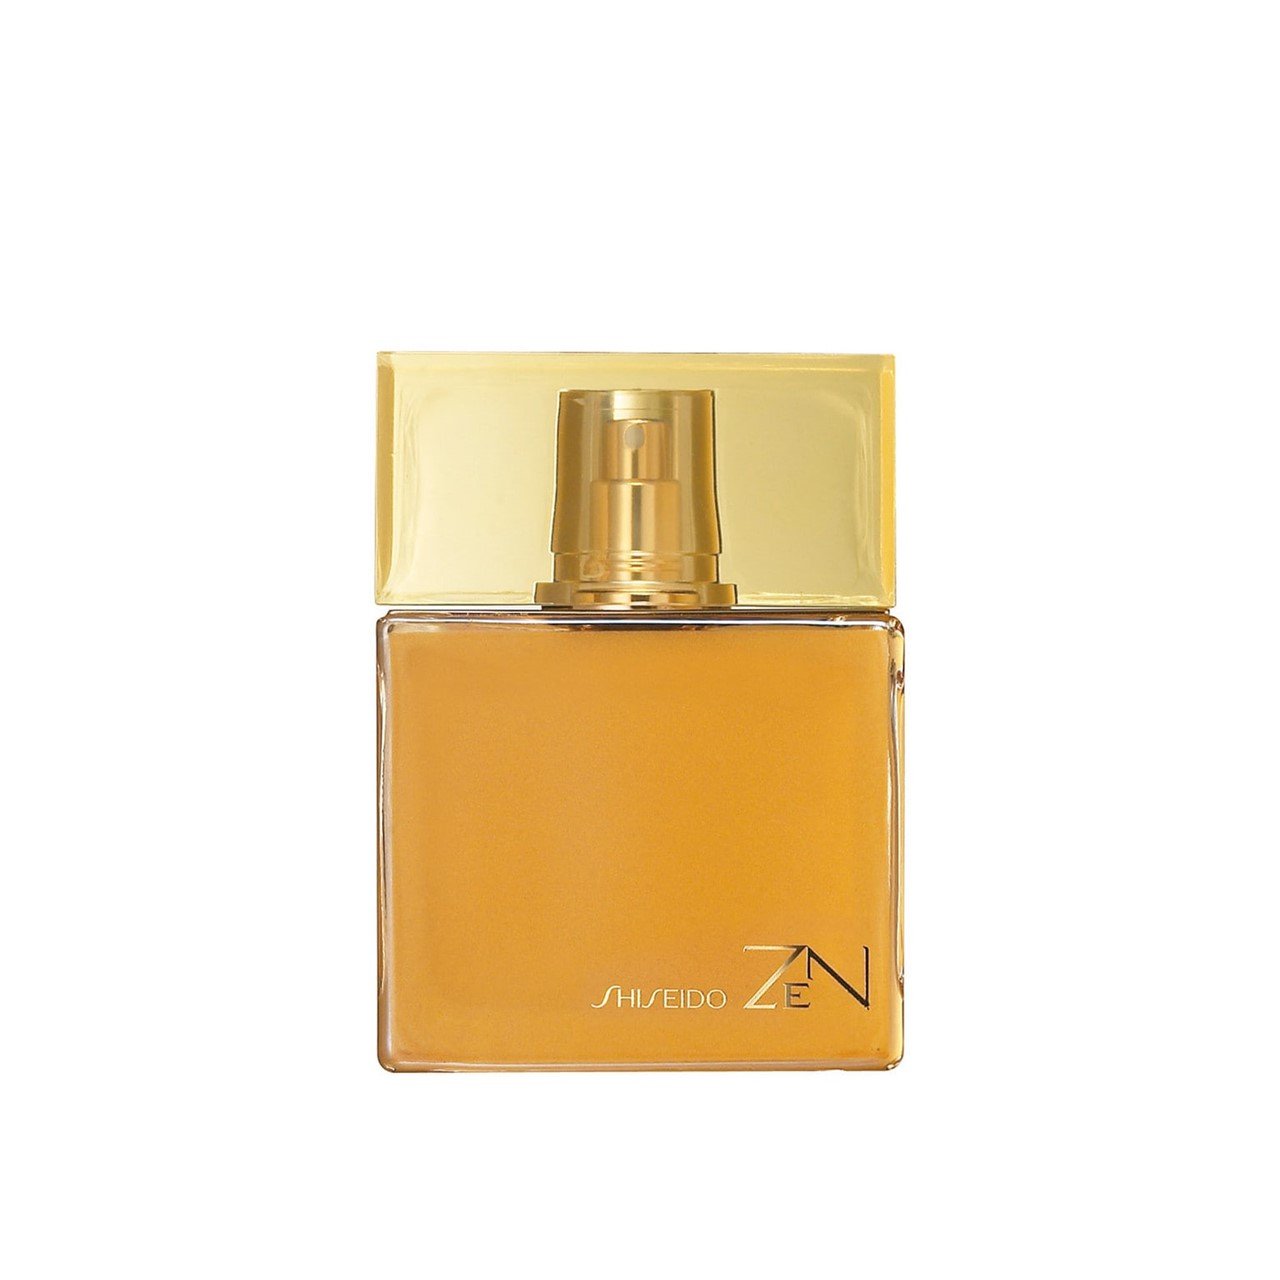 Shiseido ZEN Eau de Parfum 100ml (3.4fl oz)